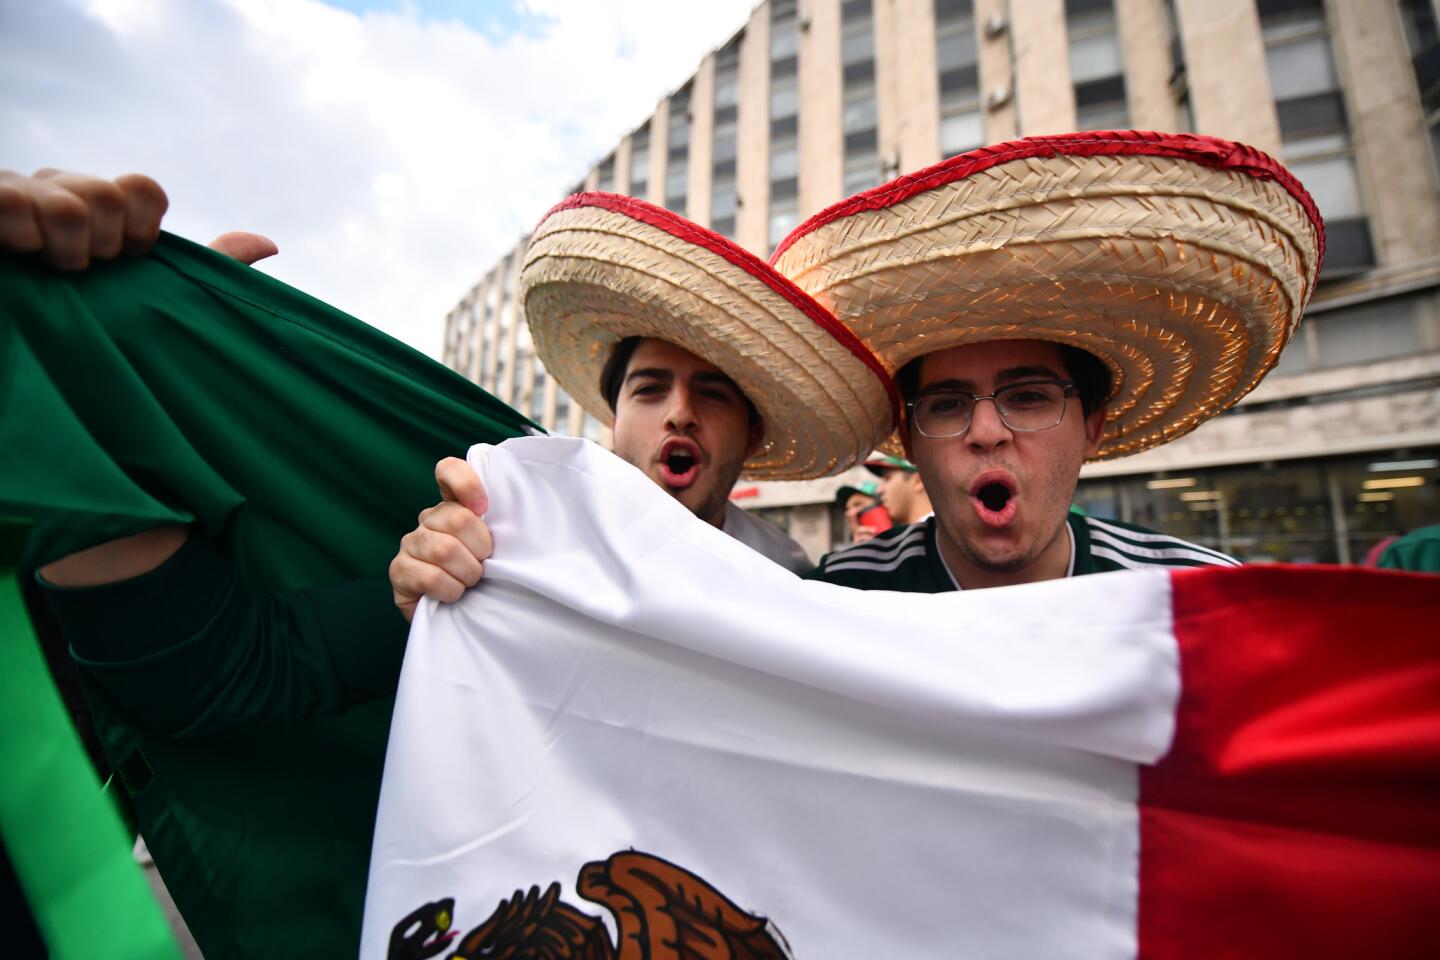 La fiesta de los mexicanos anima las calles de Moscú durante el Mundial.